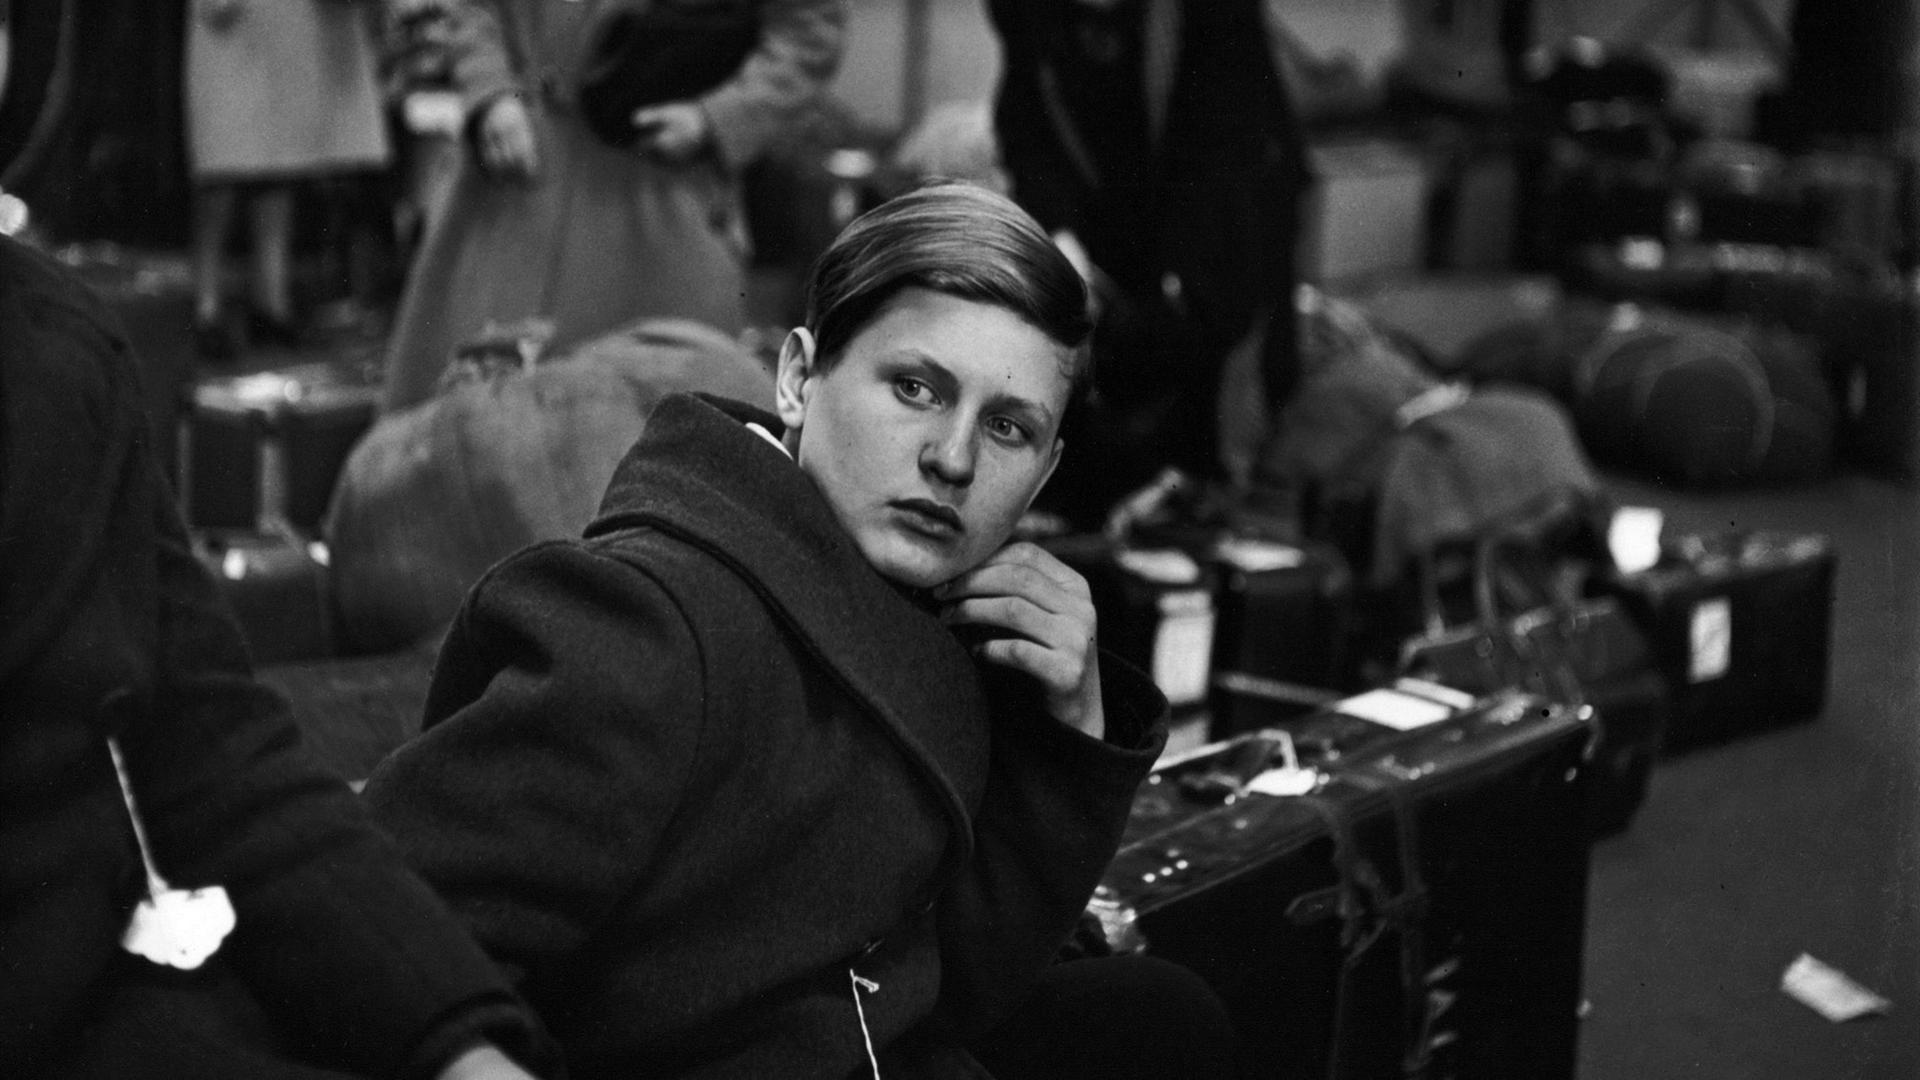 Ein DP-Junge in der Ankunftshalle von New York, 1947/48.